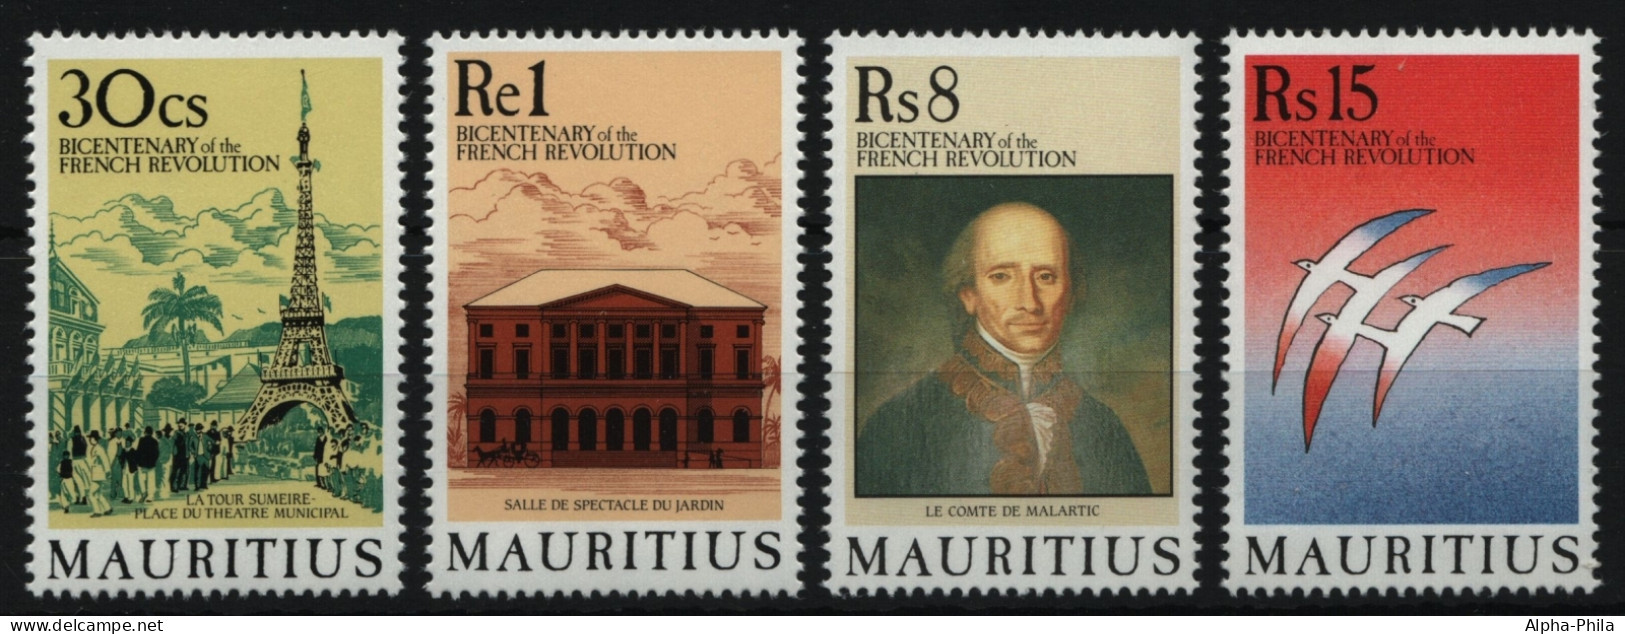 Mauritius 1989 - Mi-Nr. 683-686 ** - MNH - Französische Revolution - Mauricio (1968-...)